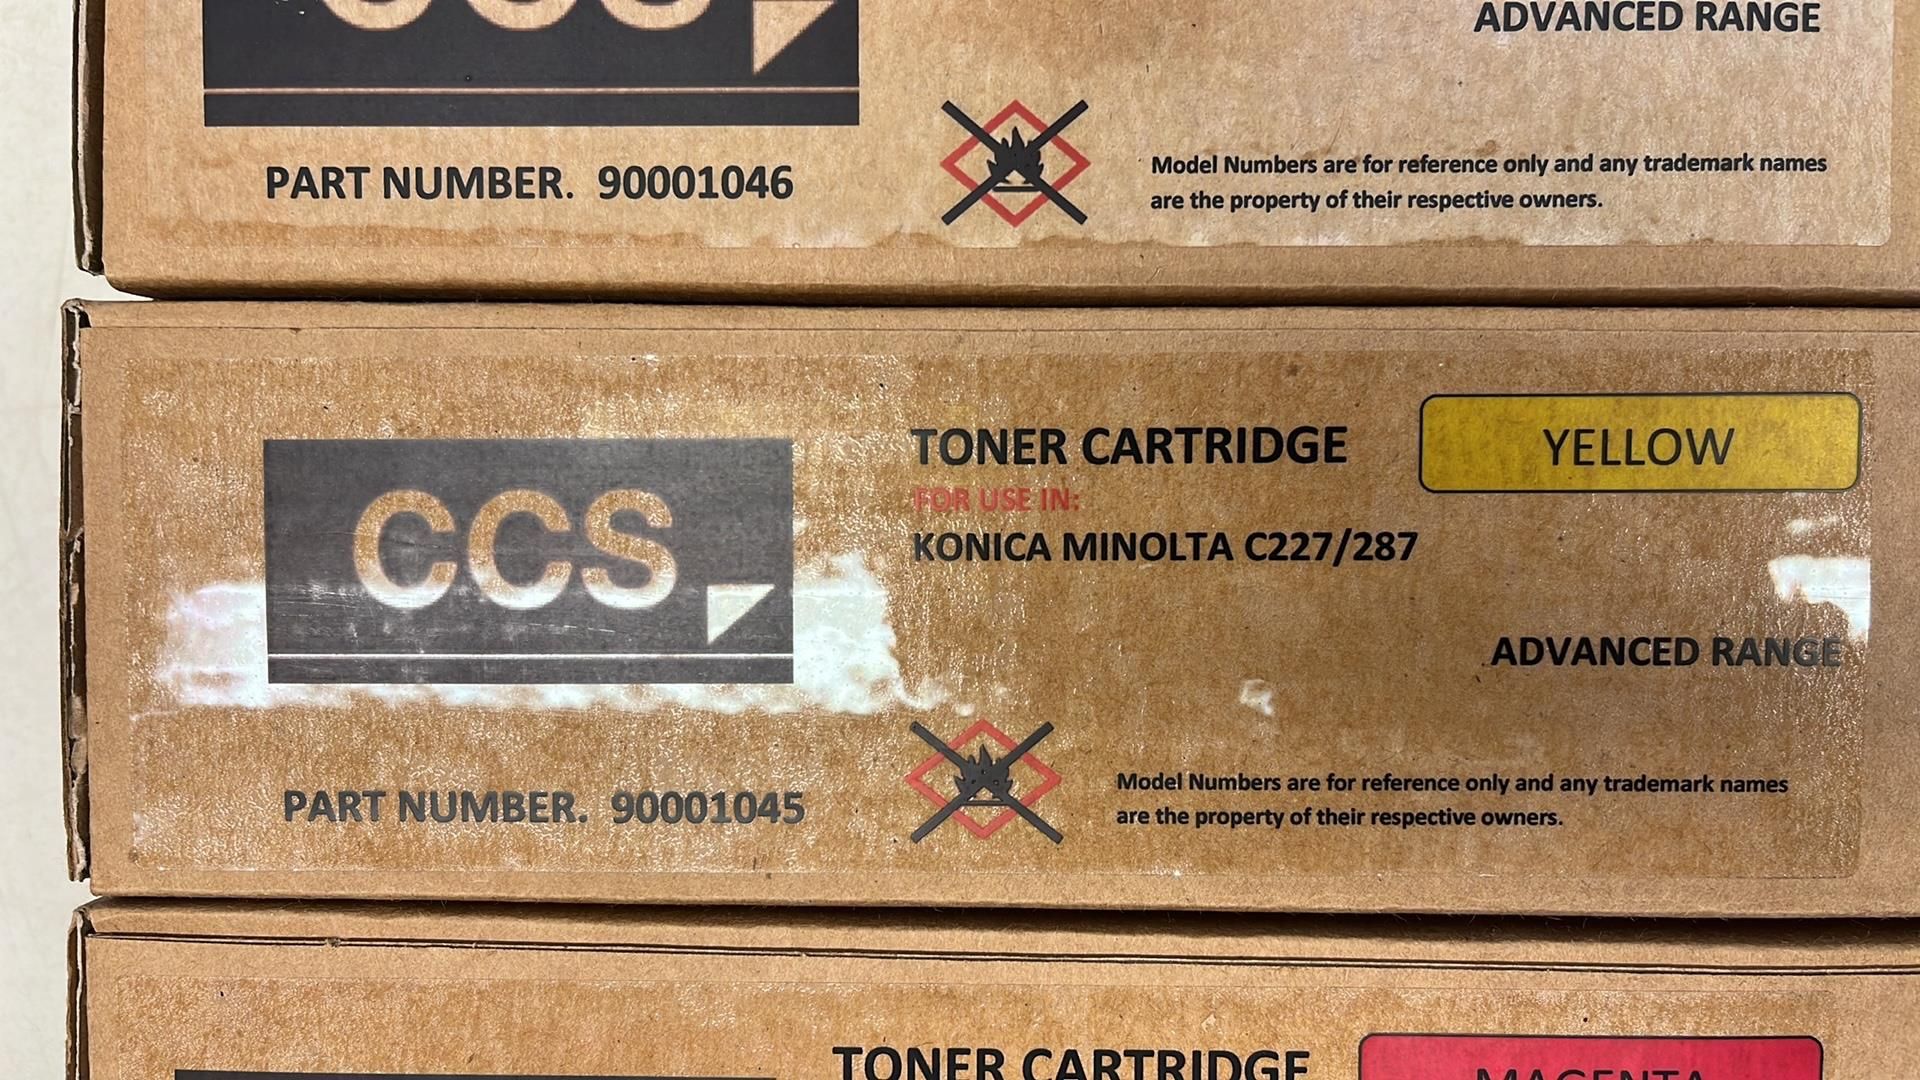 4 x Ccs Toner Cartridges - Image 4 of 5